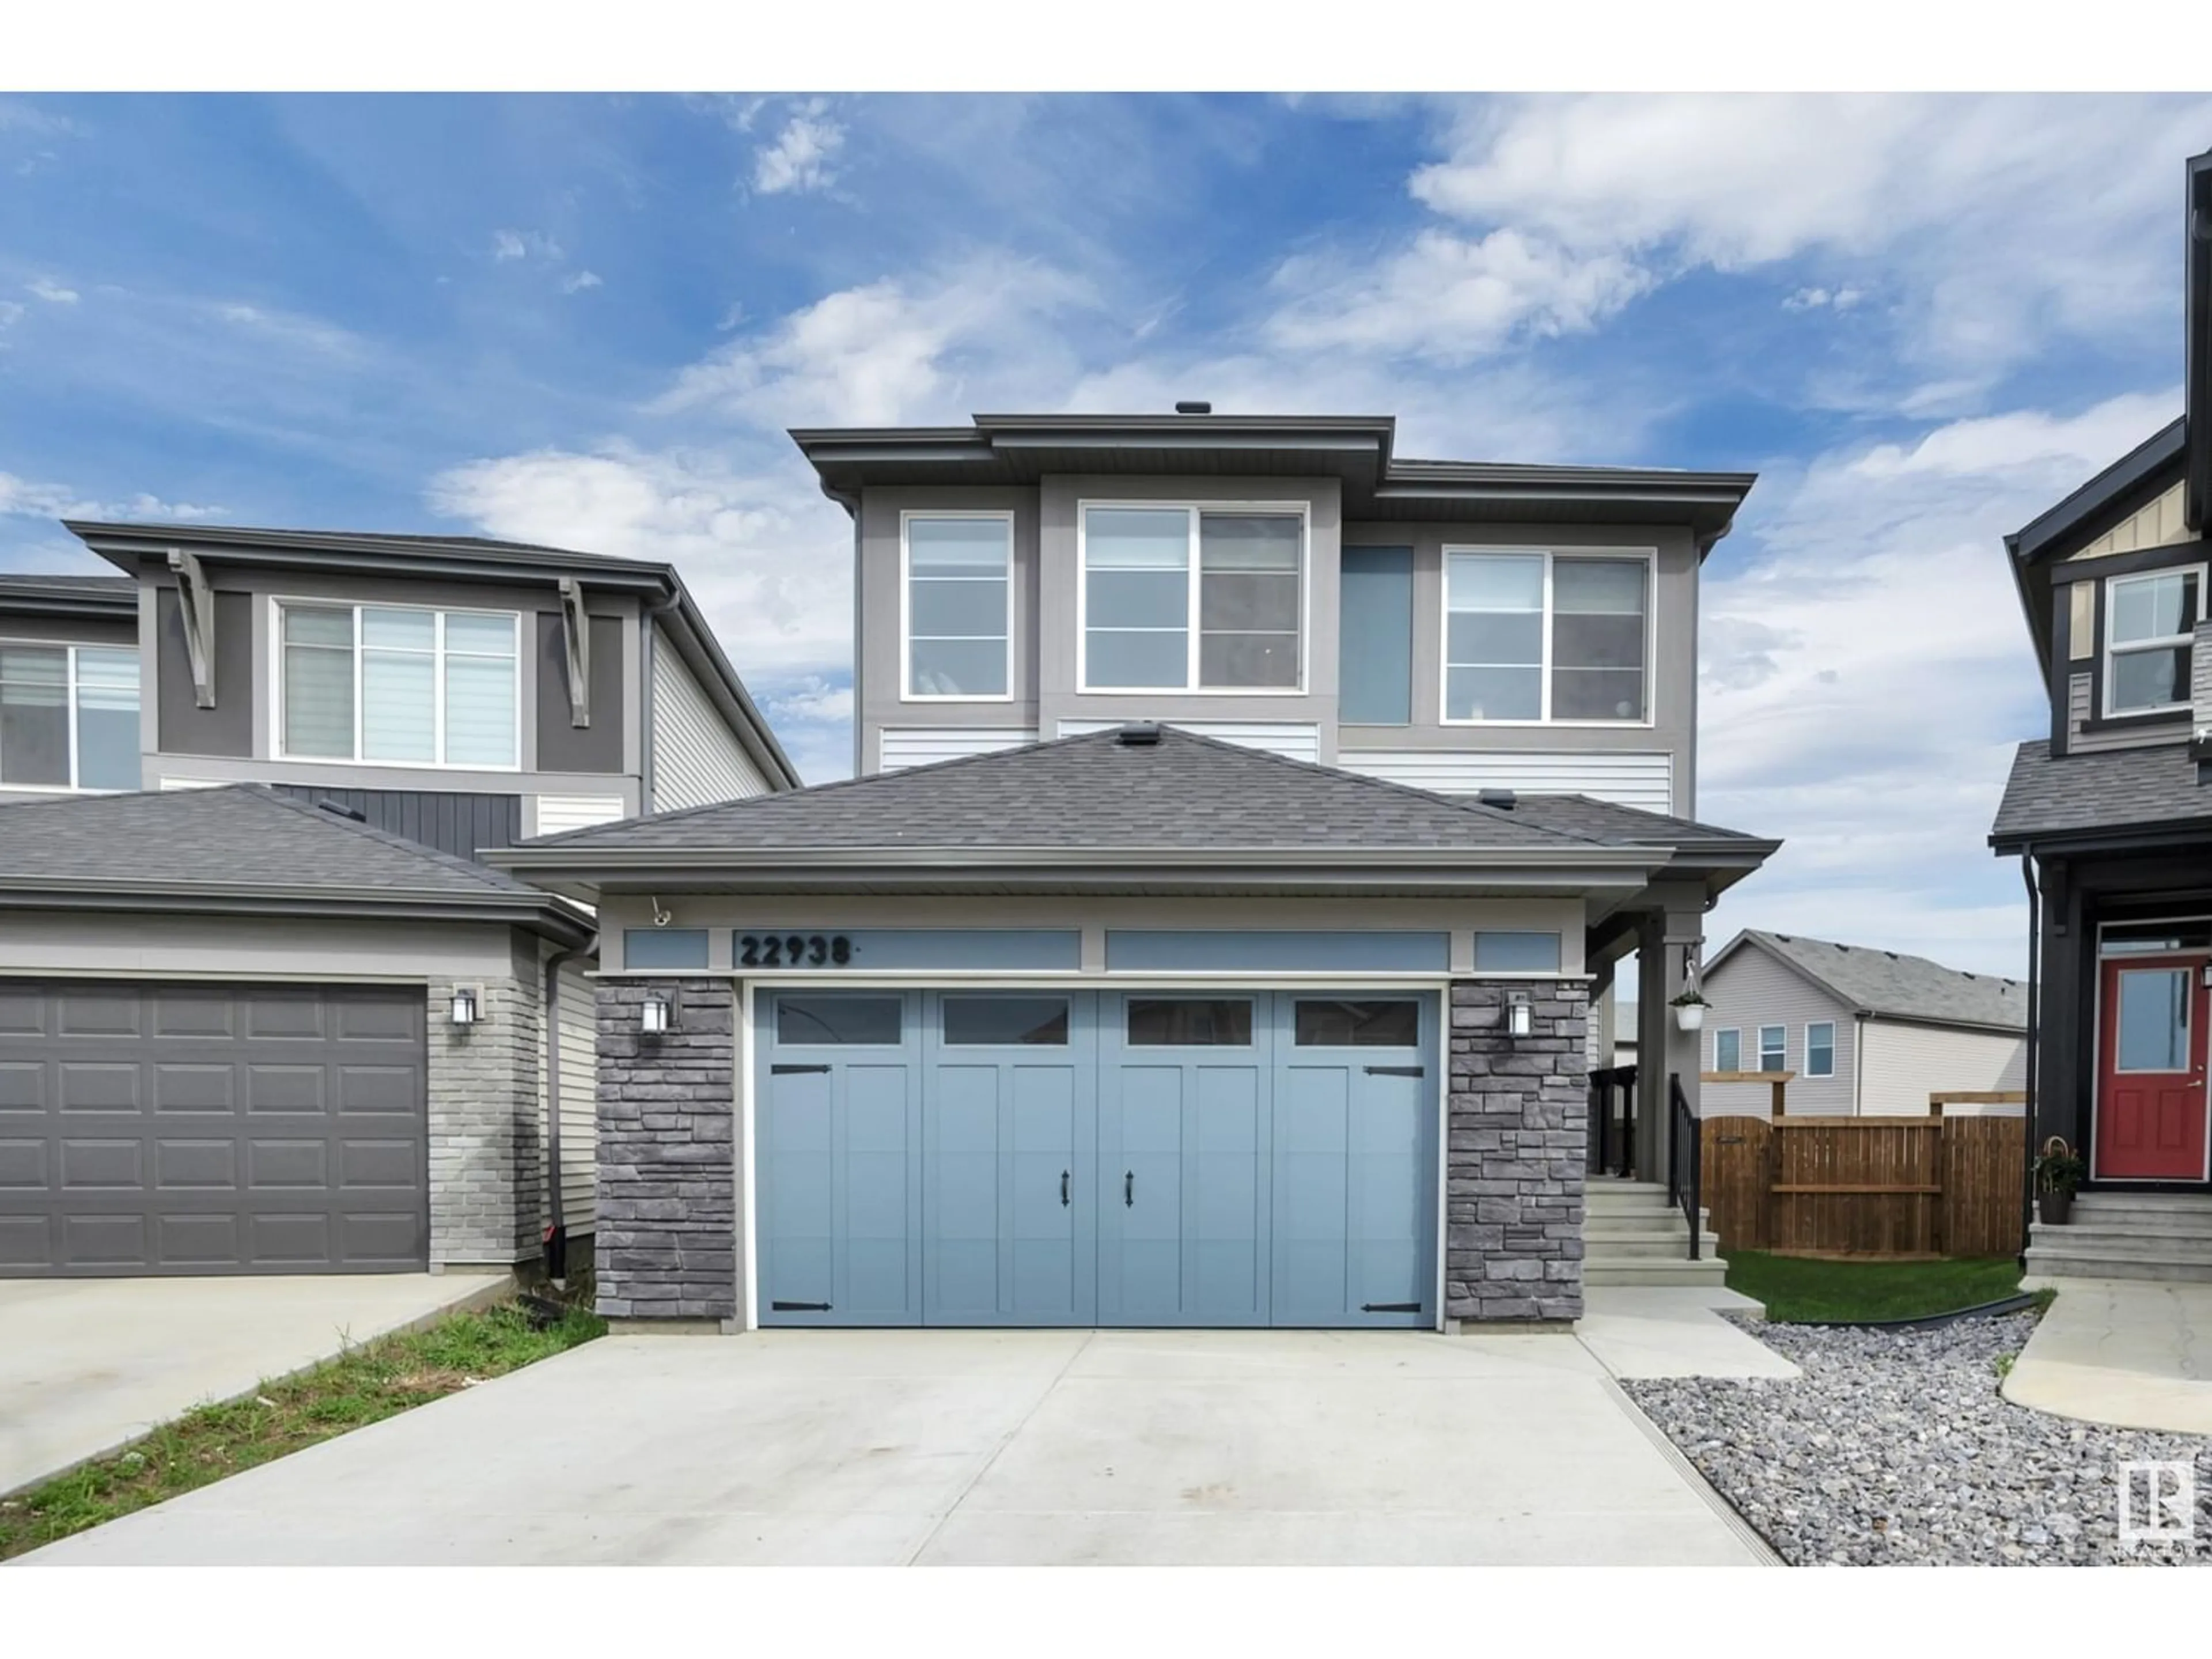 Frontside or backside of a home for 22938 95A AV NW, Edmonton Alberta T5T7K8